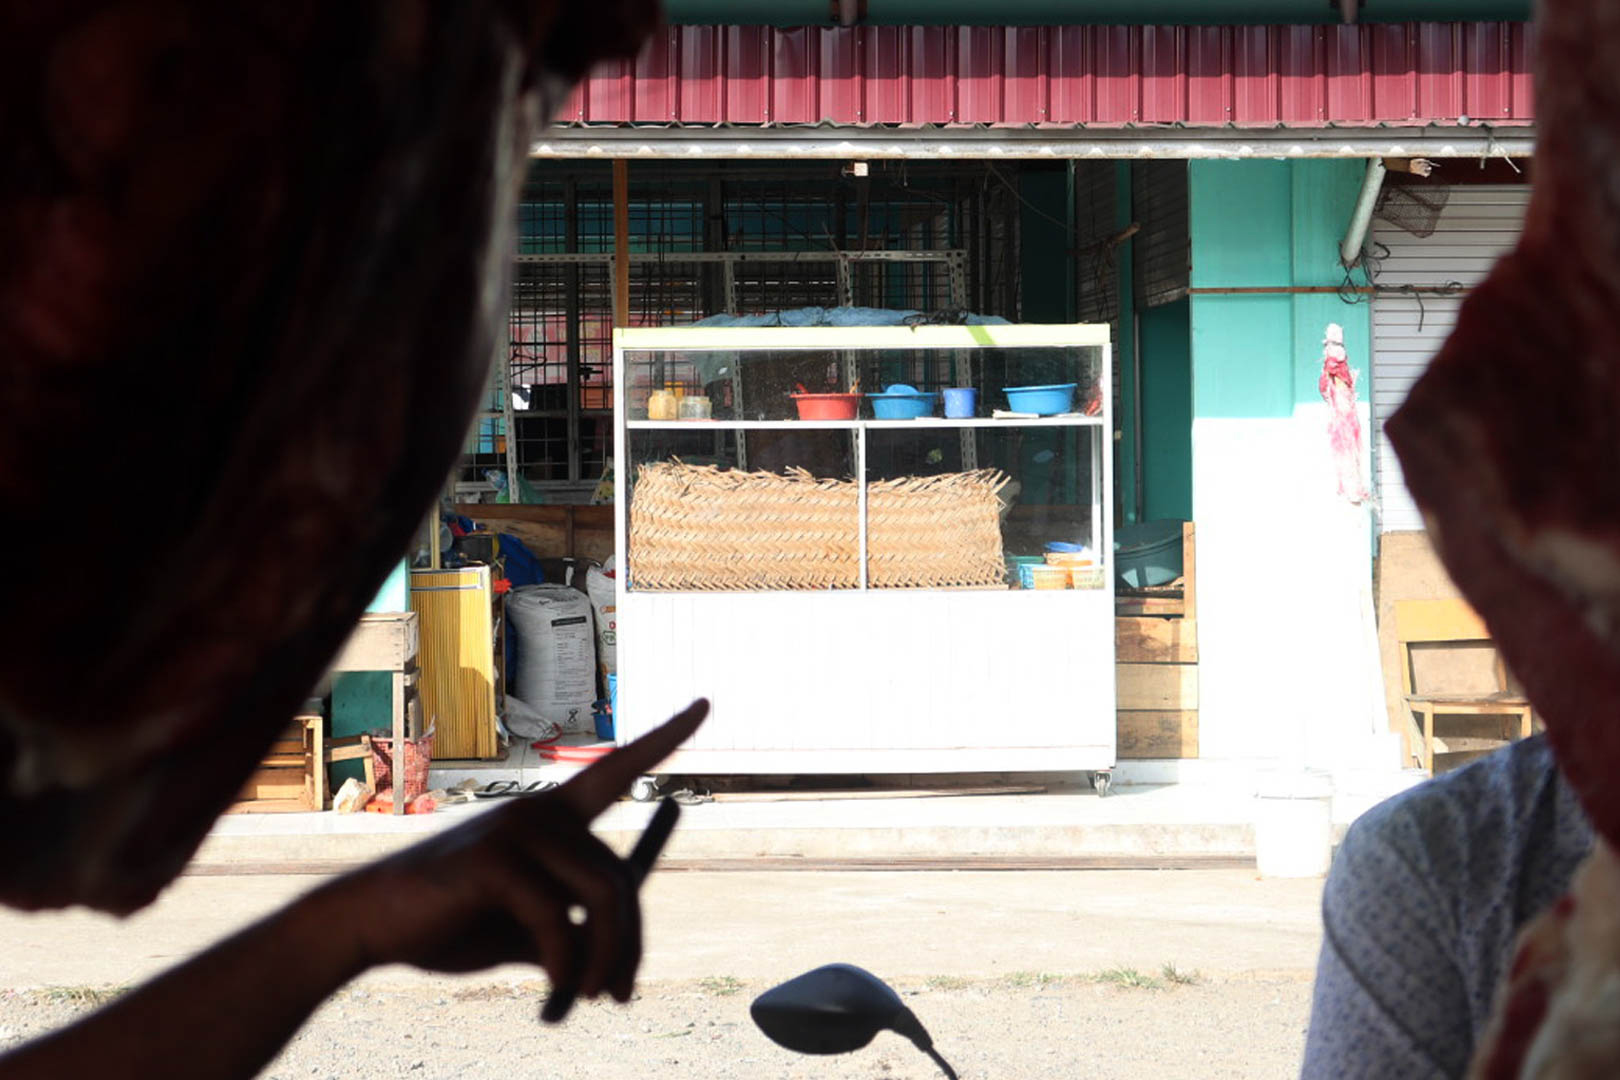 Letak kios bumbu terletak di seberang penjual daging di Pasar Lambaro. Kios bumbu itu bagaikan dapur kedua yang dimiliki Buk Ta sebab semua pengerjaan bumbu ia lakukan di kiosnya.